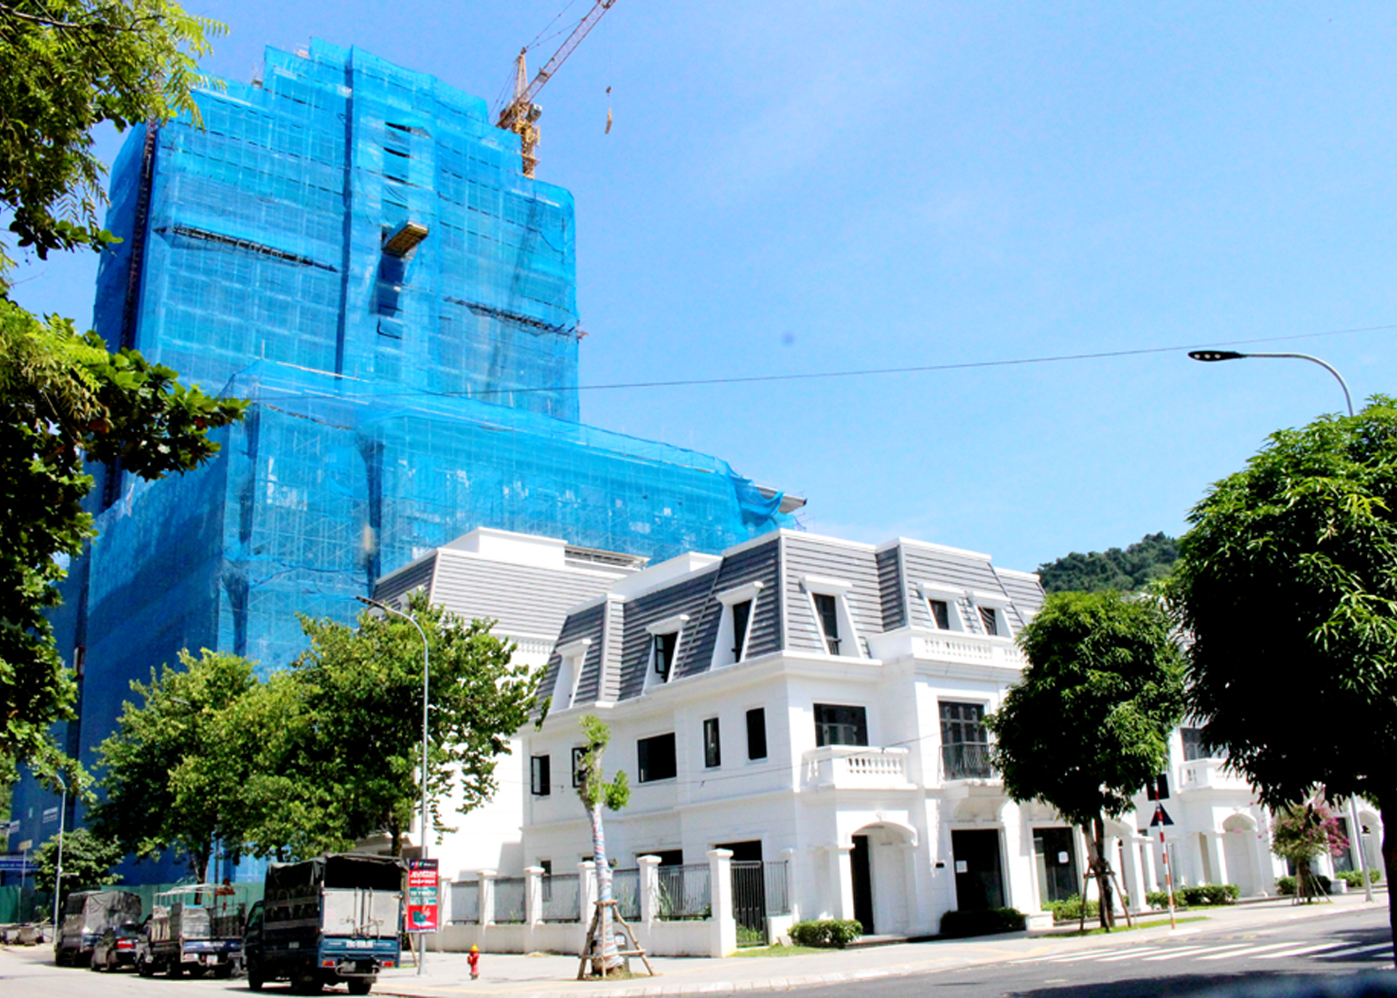 Dự án Trung tâm thương mại, khách sạn và nhà ở Shophouse Vincom góp phần thay đổi diện mạo thành phố Hà Giang.